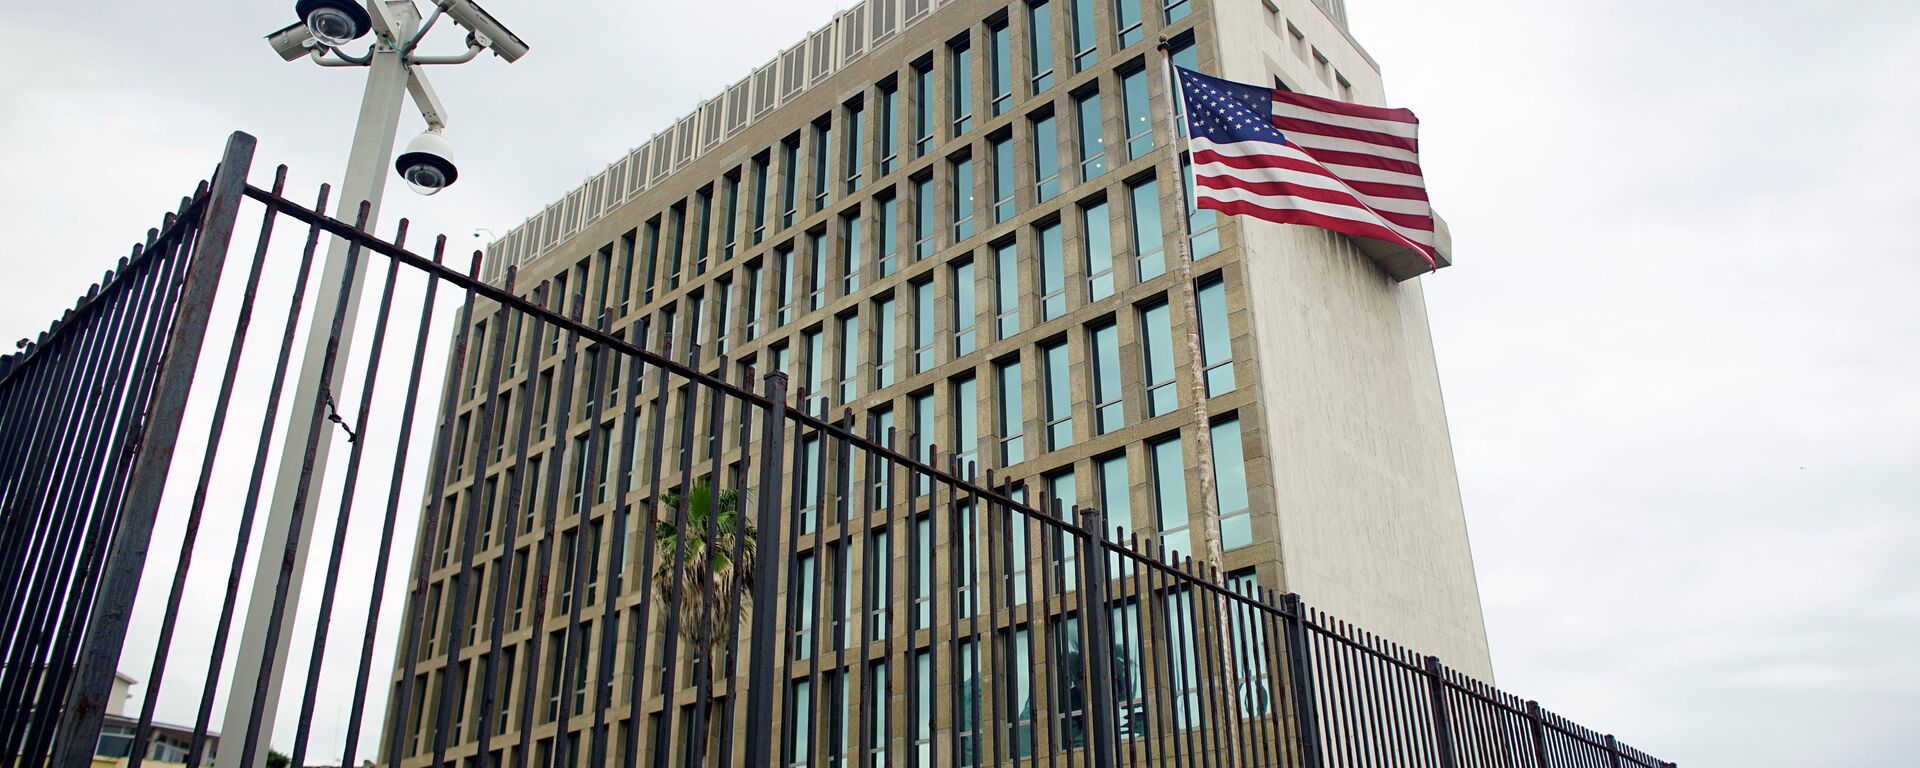 La embajada de EEUU en La Habana, Cuba - Sputnik Mundo, 1920, 25.10.2021